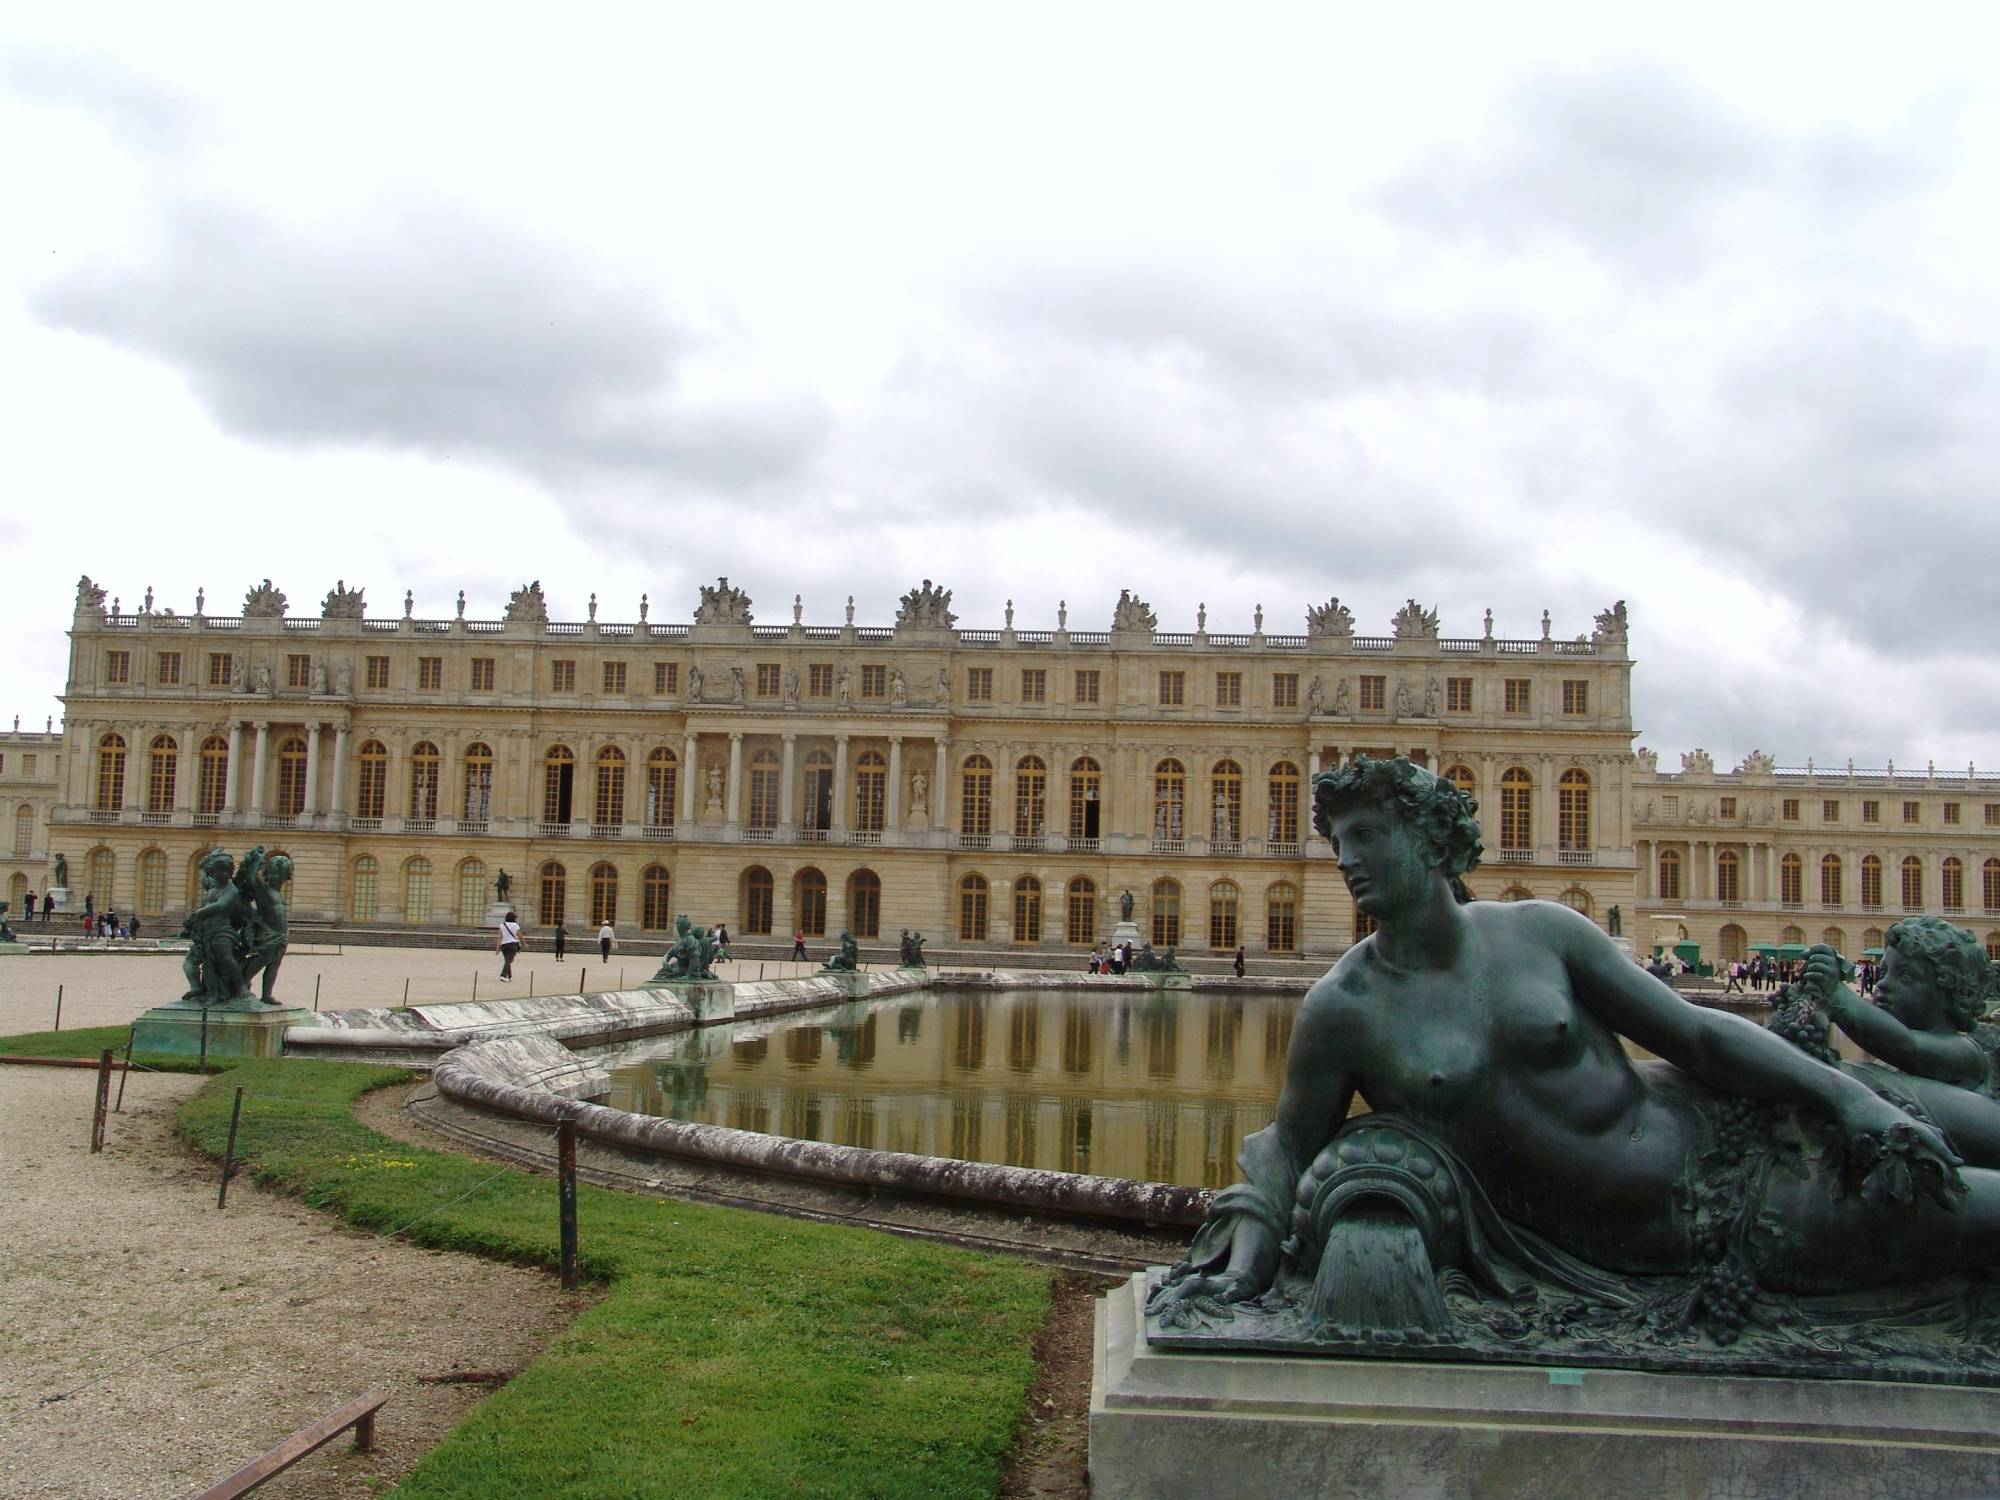 Explore the gardens of Versailles |PassPorter.com